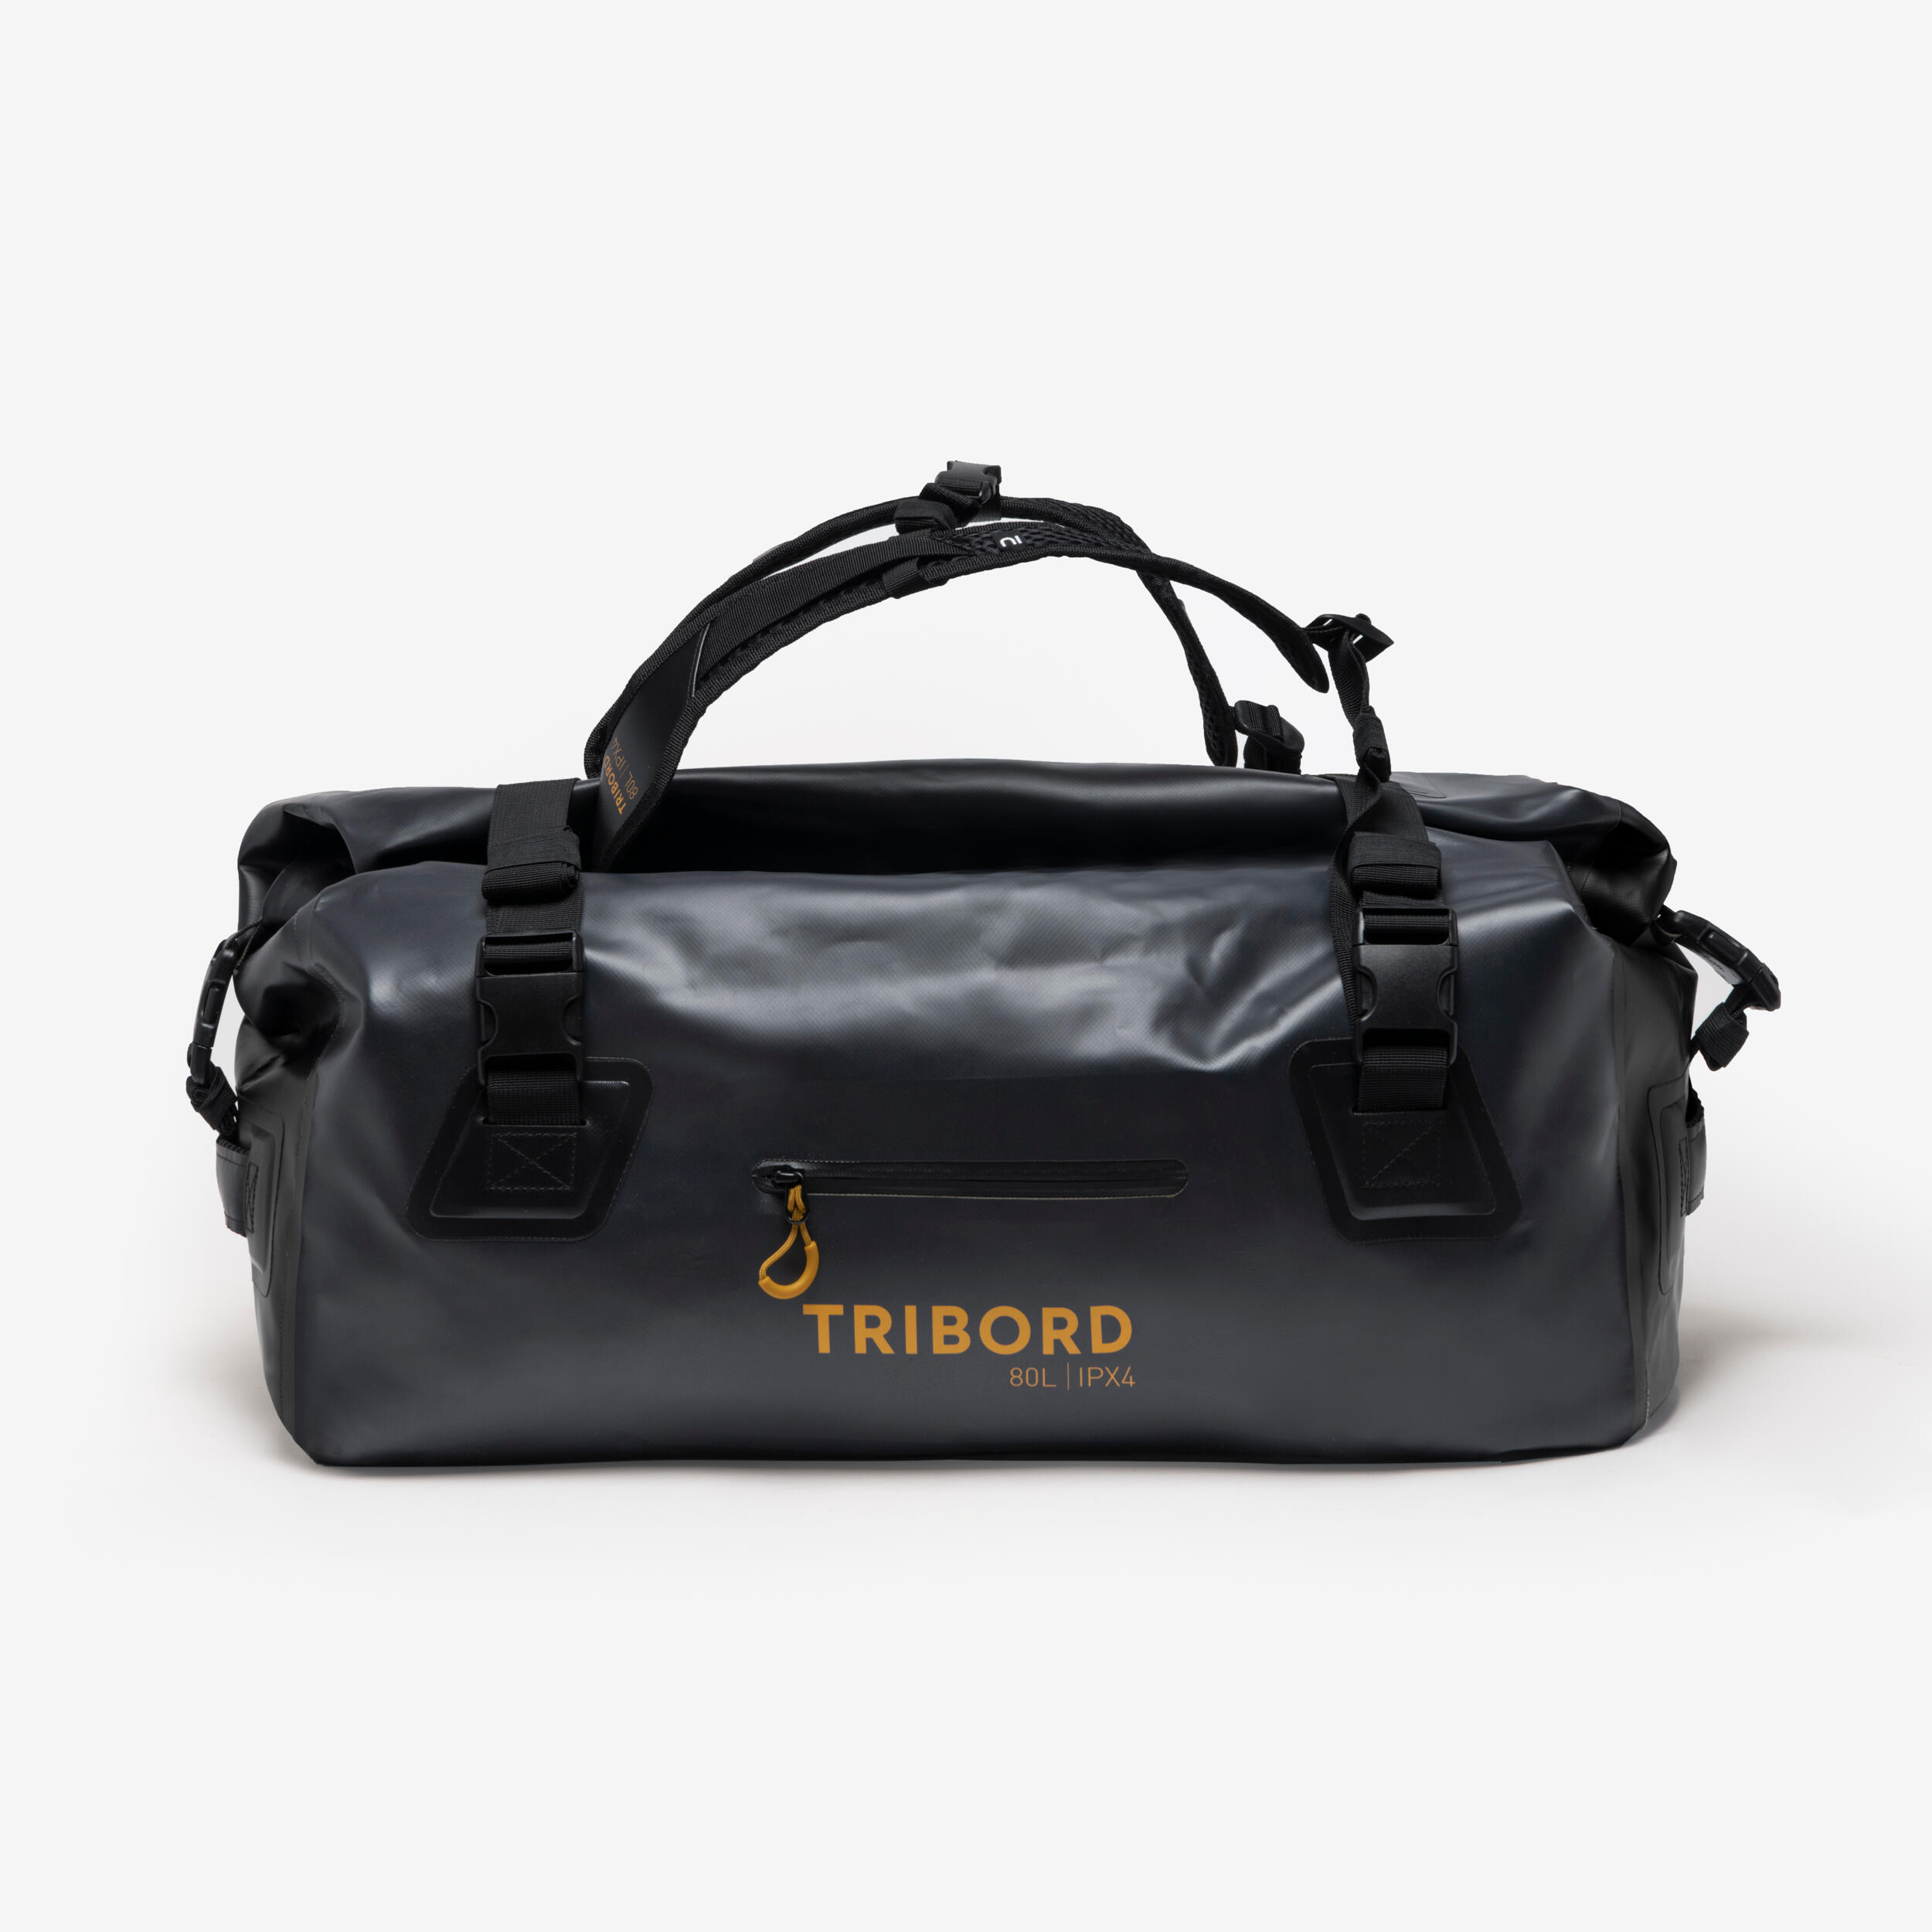 Waterproof duffle bag - 80 L travel bag Anthracite black 1/16